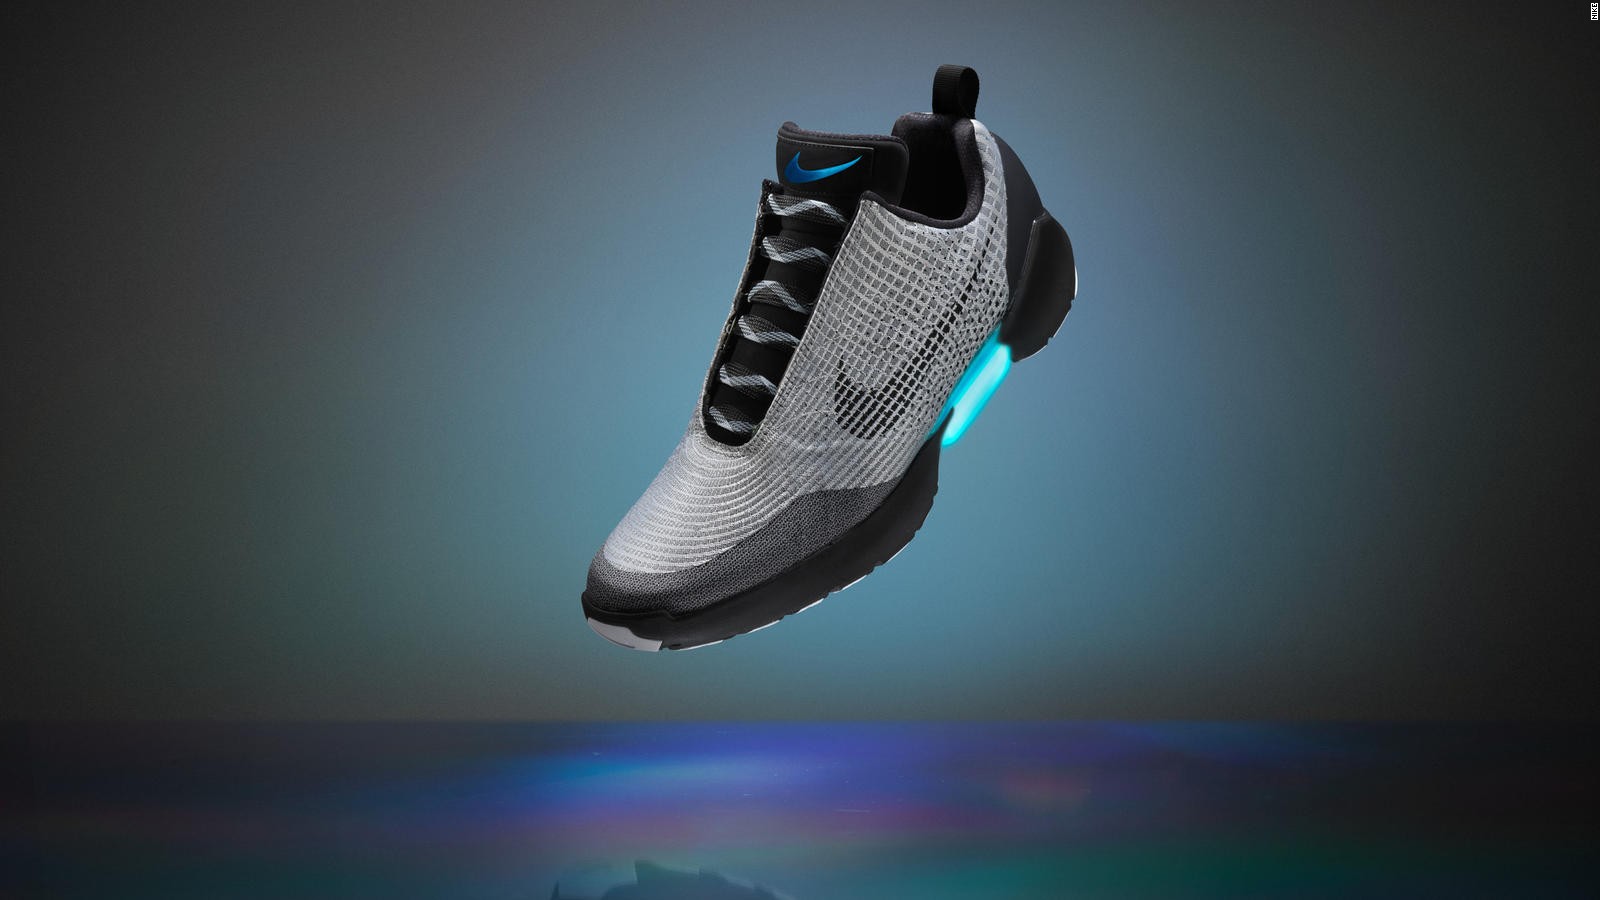 Nike lanza zapatos deportivos inteligentes | Video | CNN